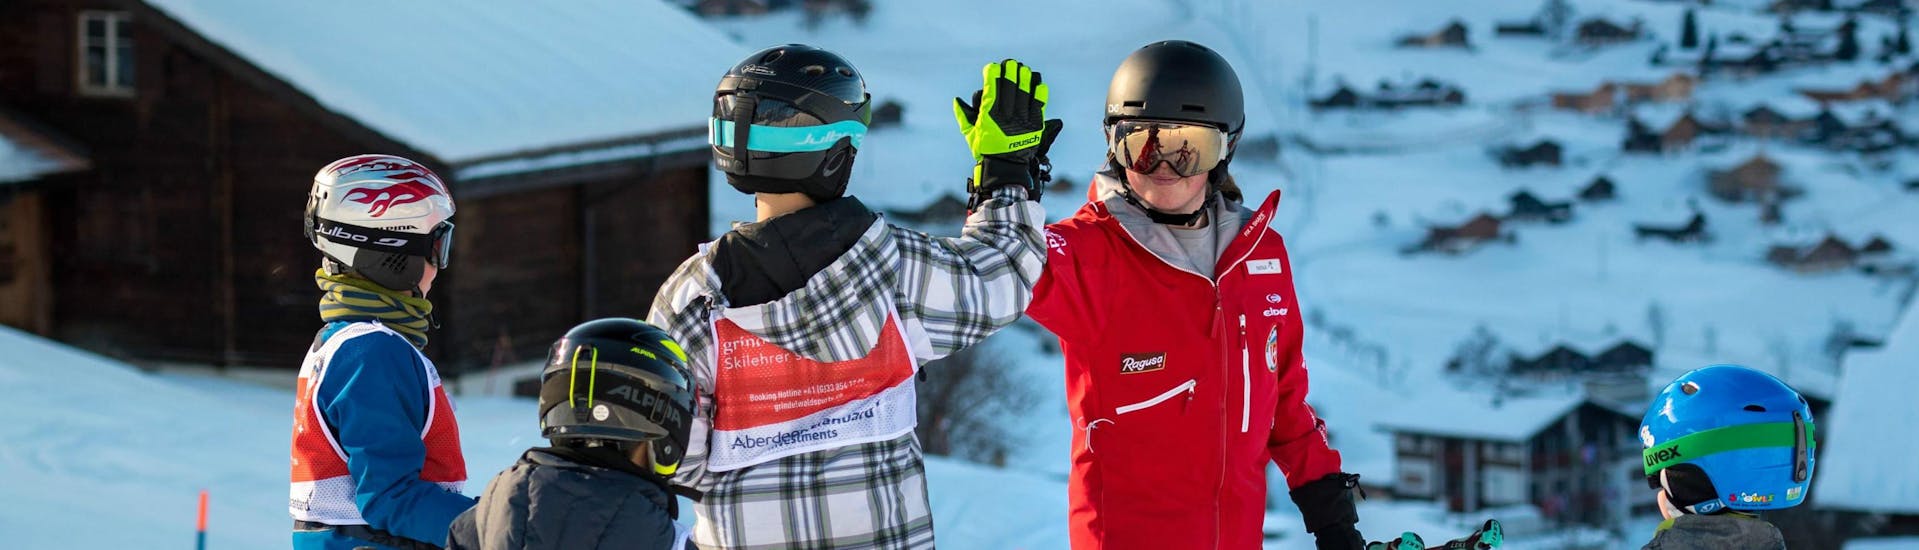 Un gruppo di giovani sciatori si diverte con il proprio istruttore e gli dà il cinque durante le lezioni di sci per bambini per sciatori esperti della Swiss Ski School di Grindelwald.